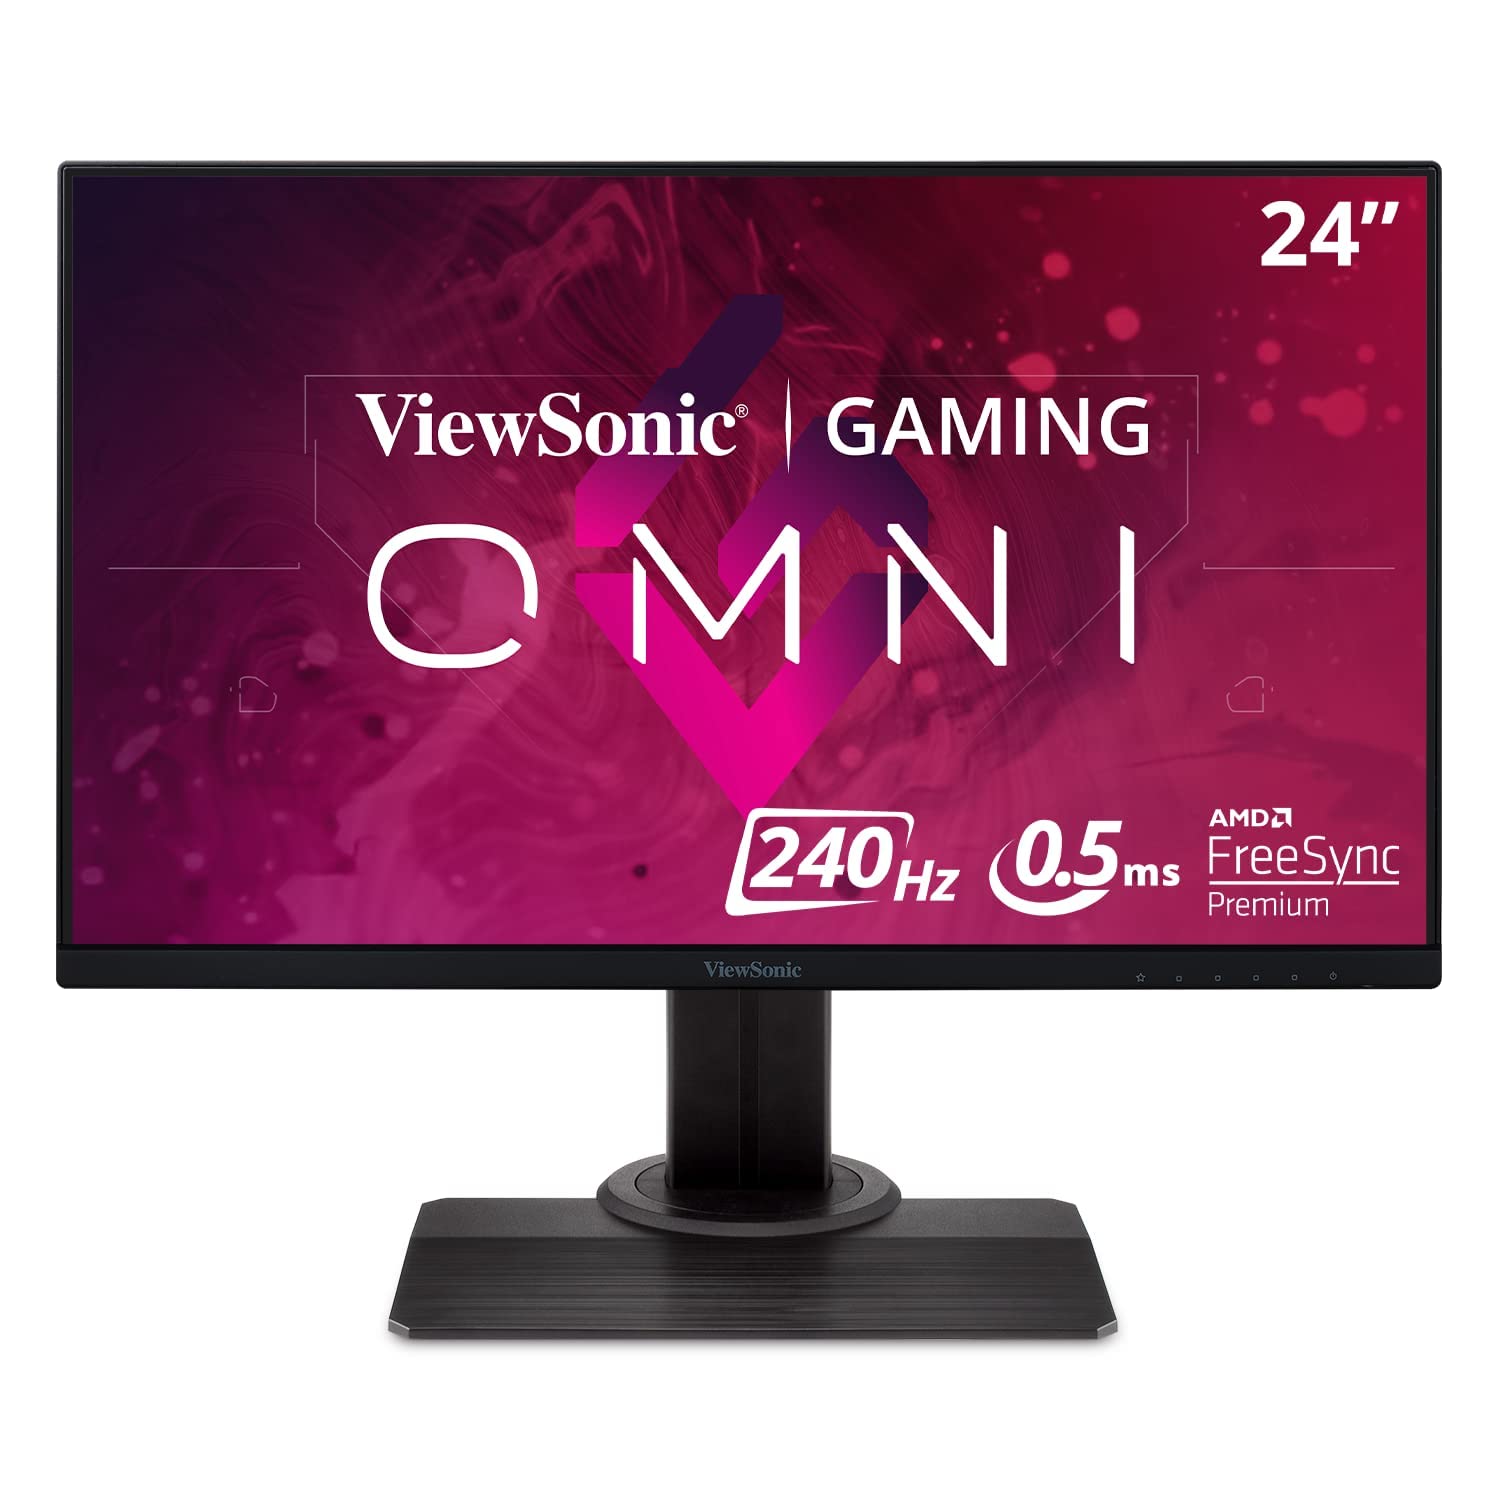  Viewsonic شاشة ألعاب OMNI XG2431 24 بوصة 1080p 0.5 مللي ثانية 240 هرتز مع AMD FreeSync Premium وبيئة العمل المتقدمة والعناية بالعين ومنفذ...